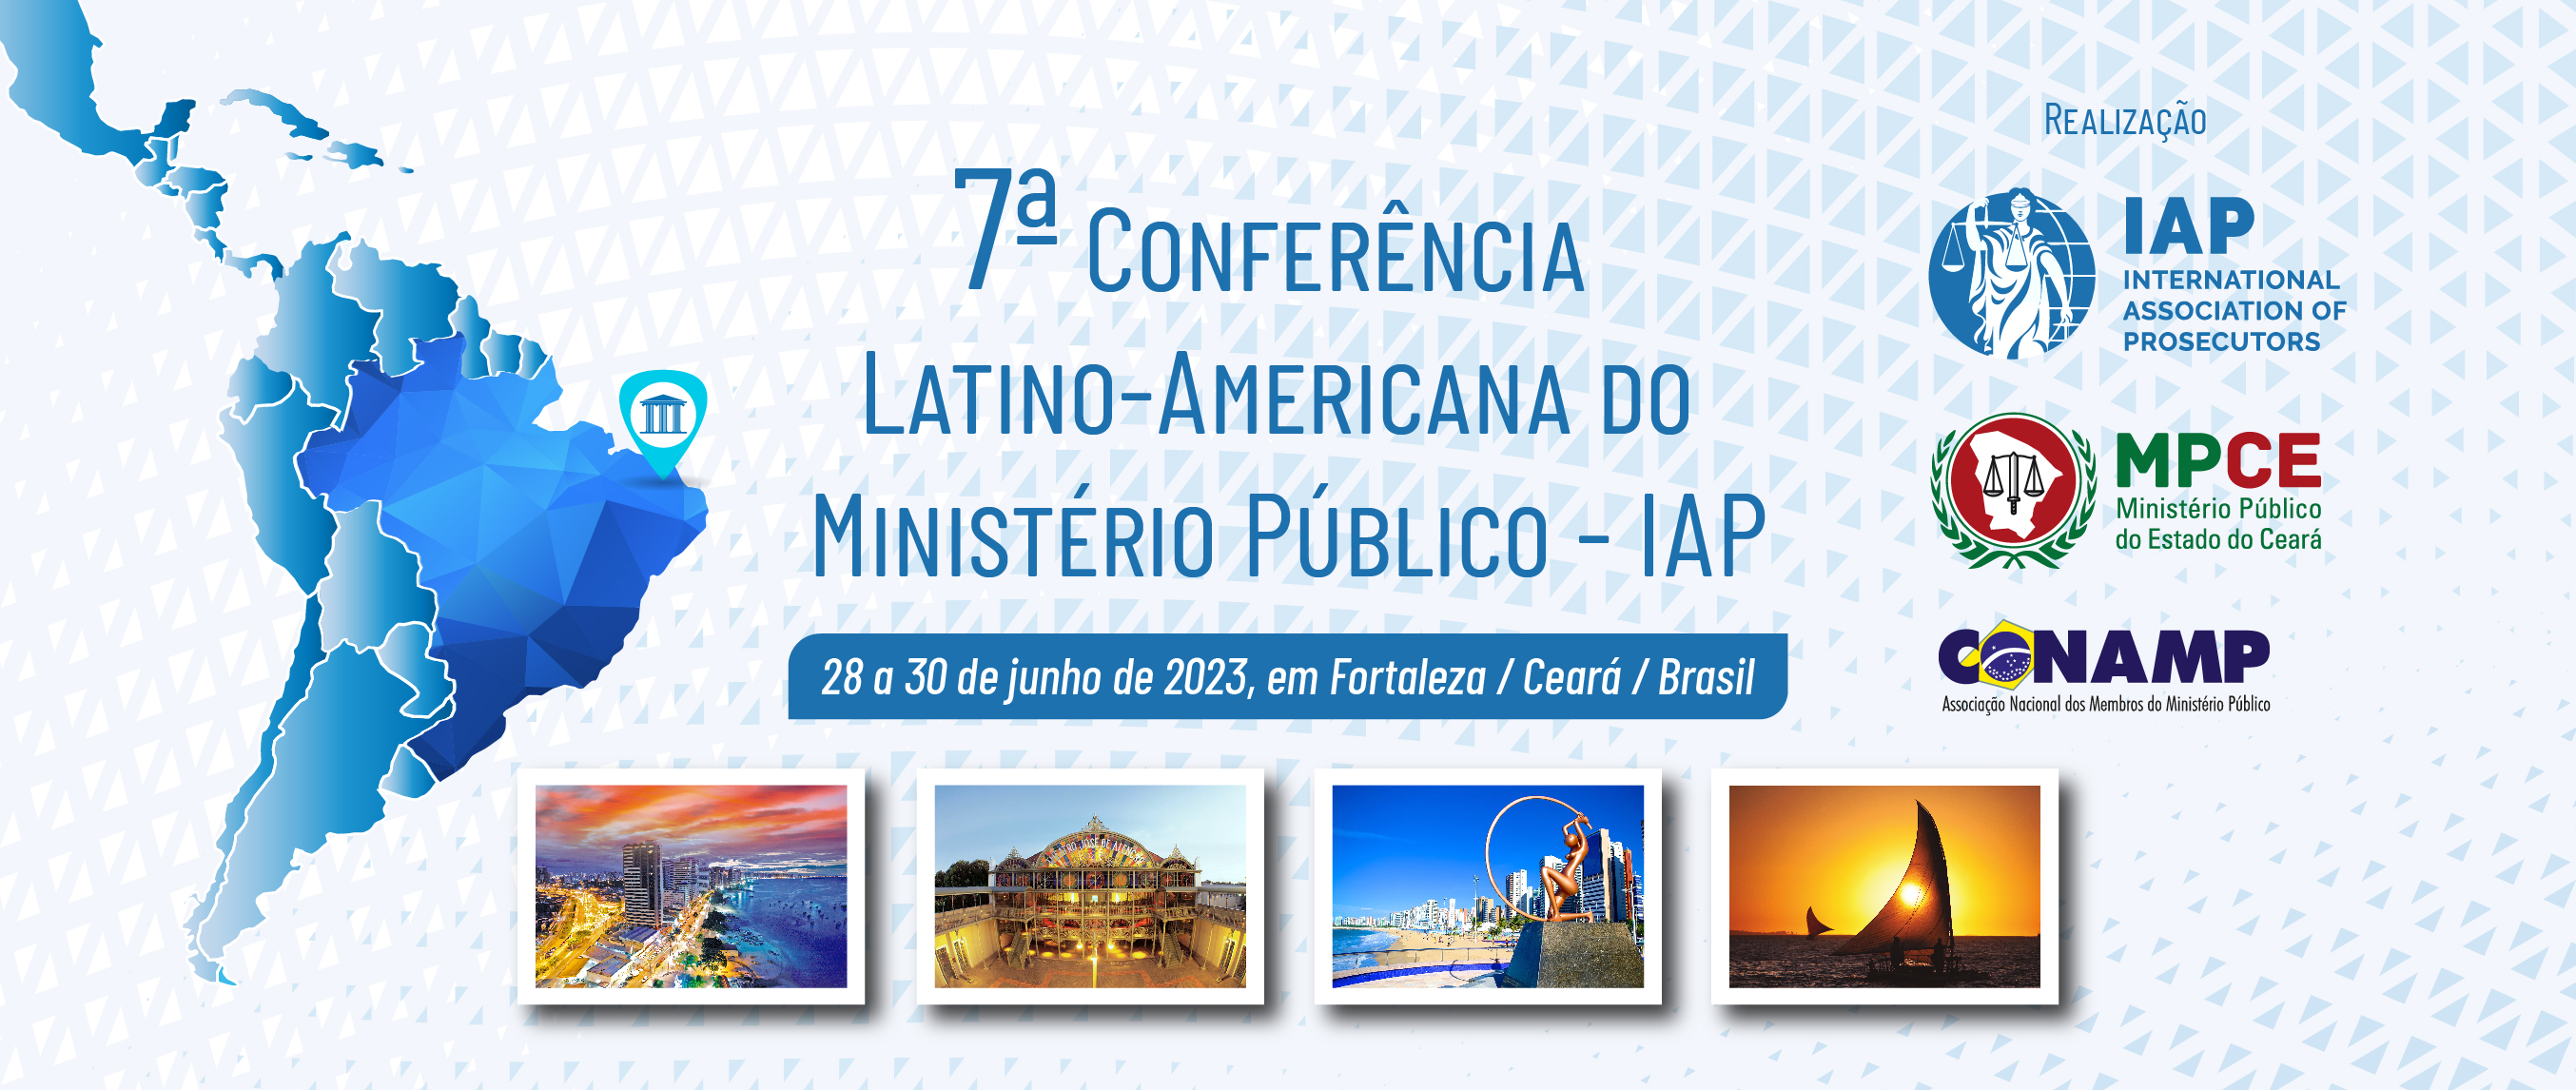 Confira a programação da 7ª Conferência Regional da IAP na América Latina 